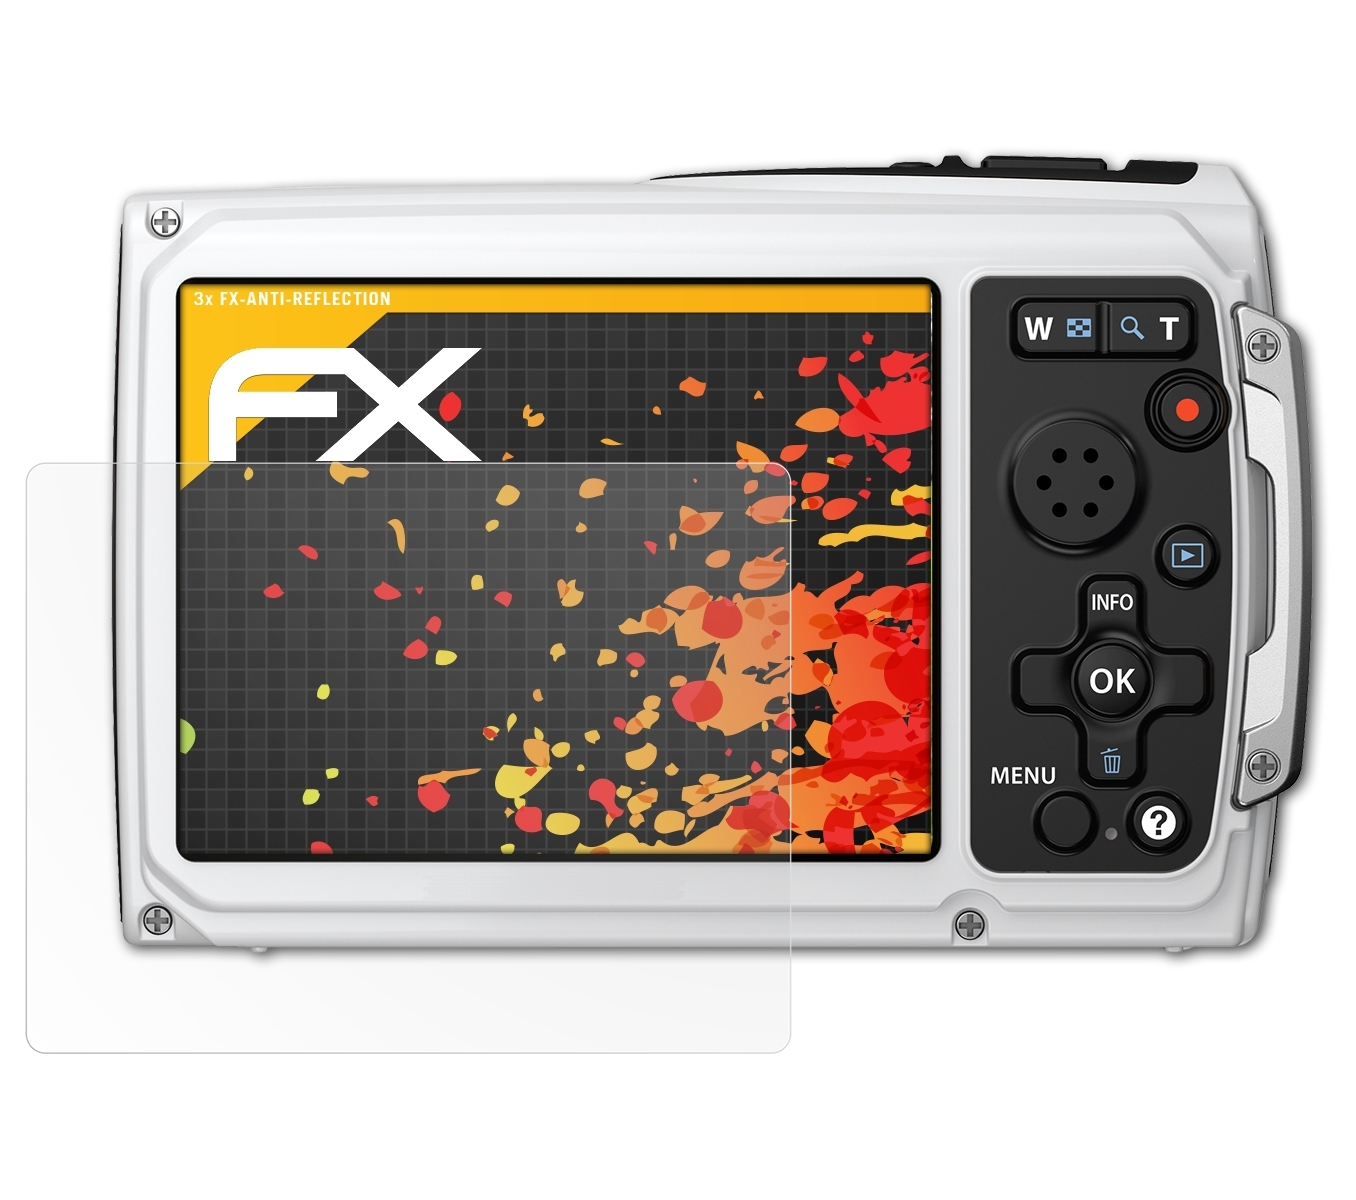 ATFOLIX 3x FX-Antireflex Olympus Displayschutz(für TG-310)